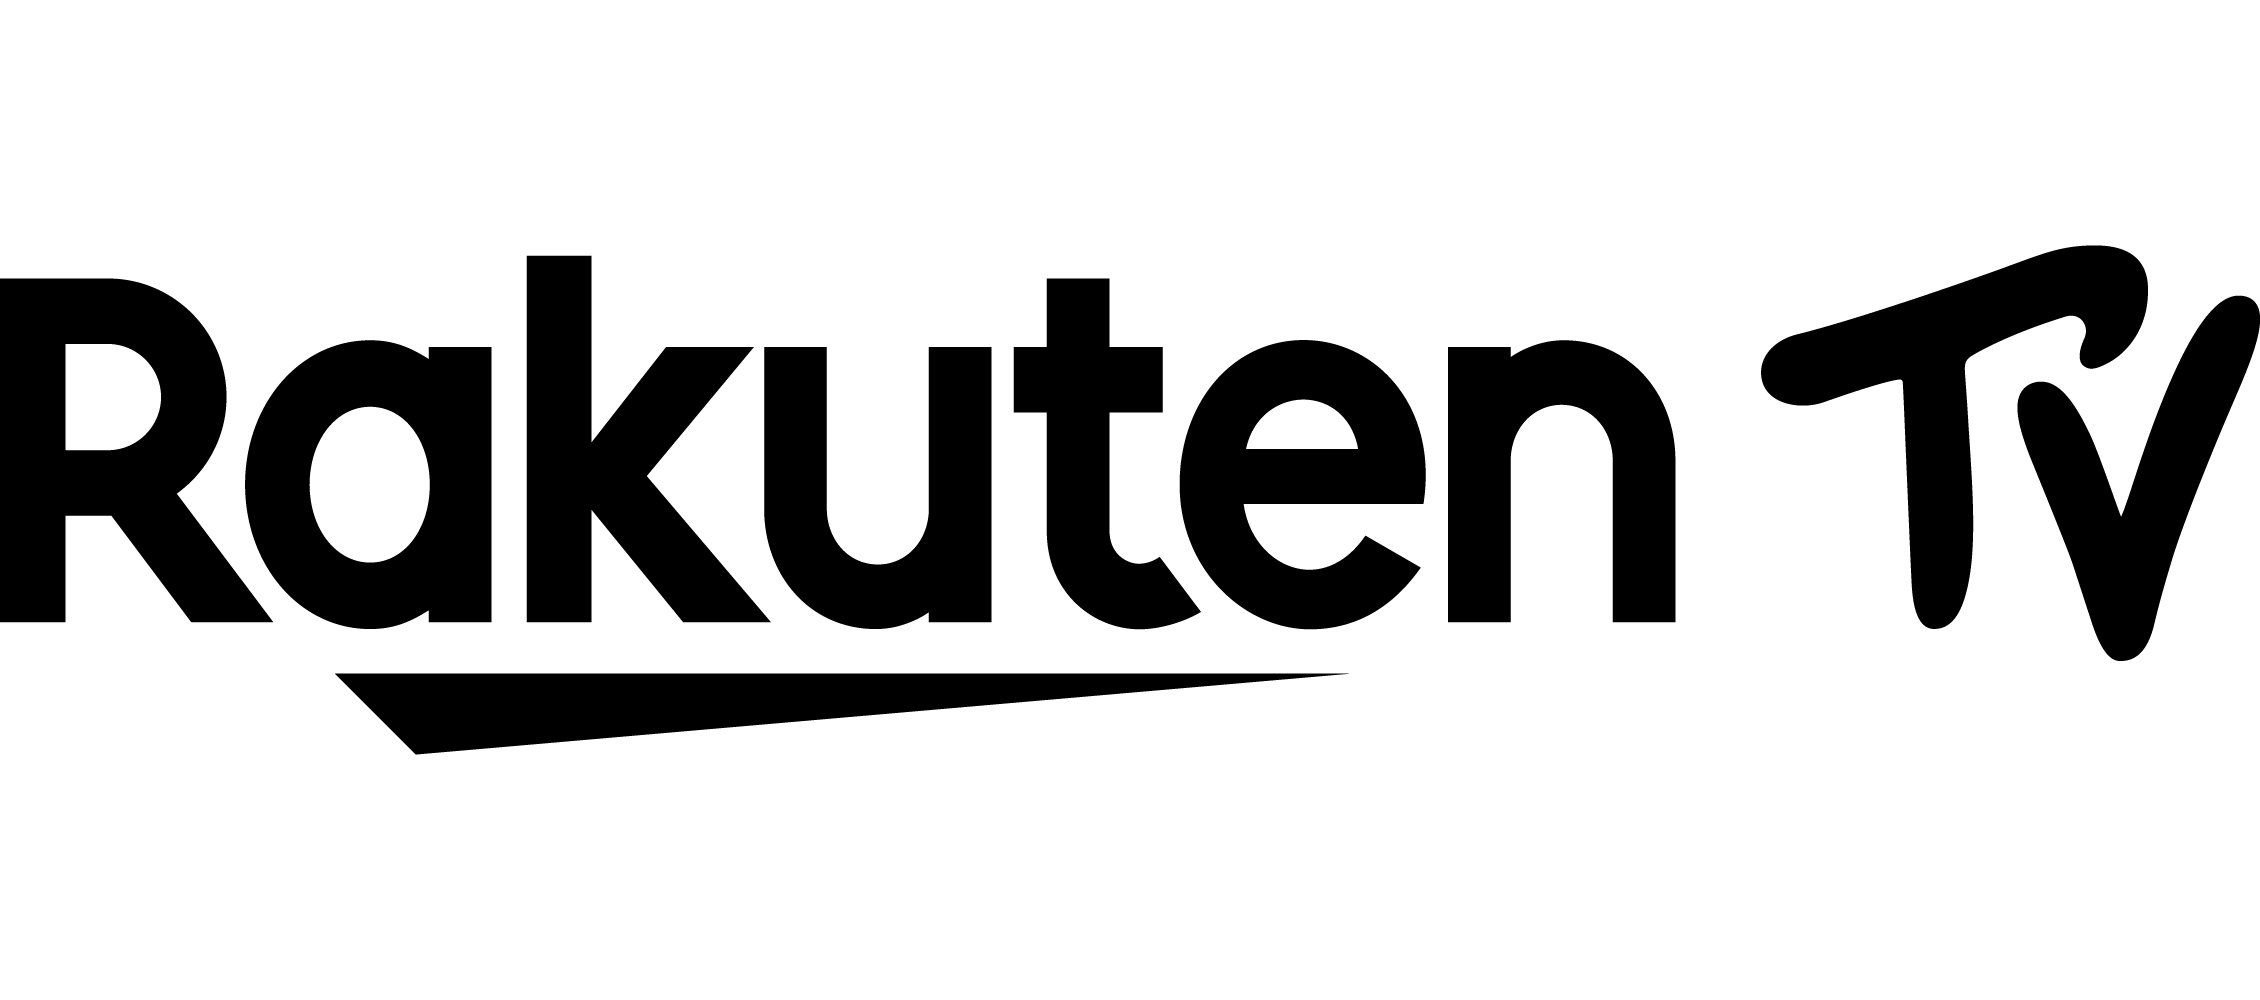 Il logo di Trade Desk